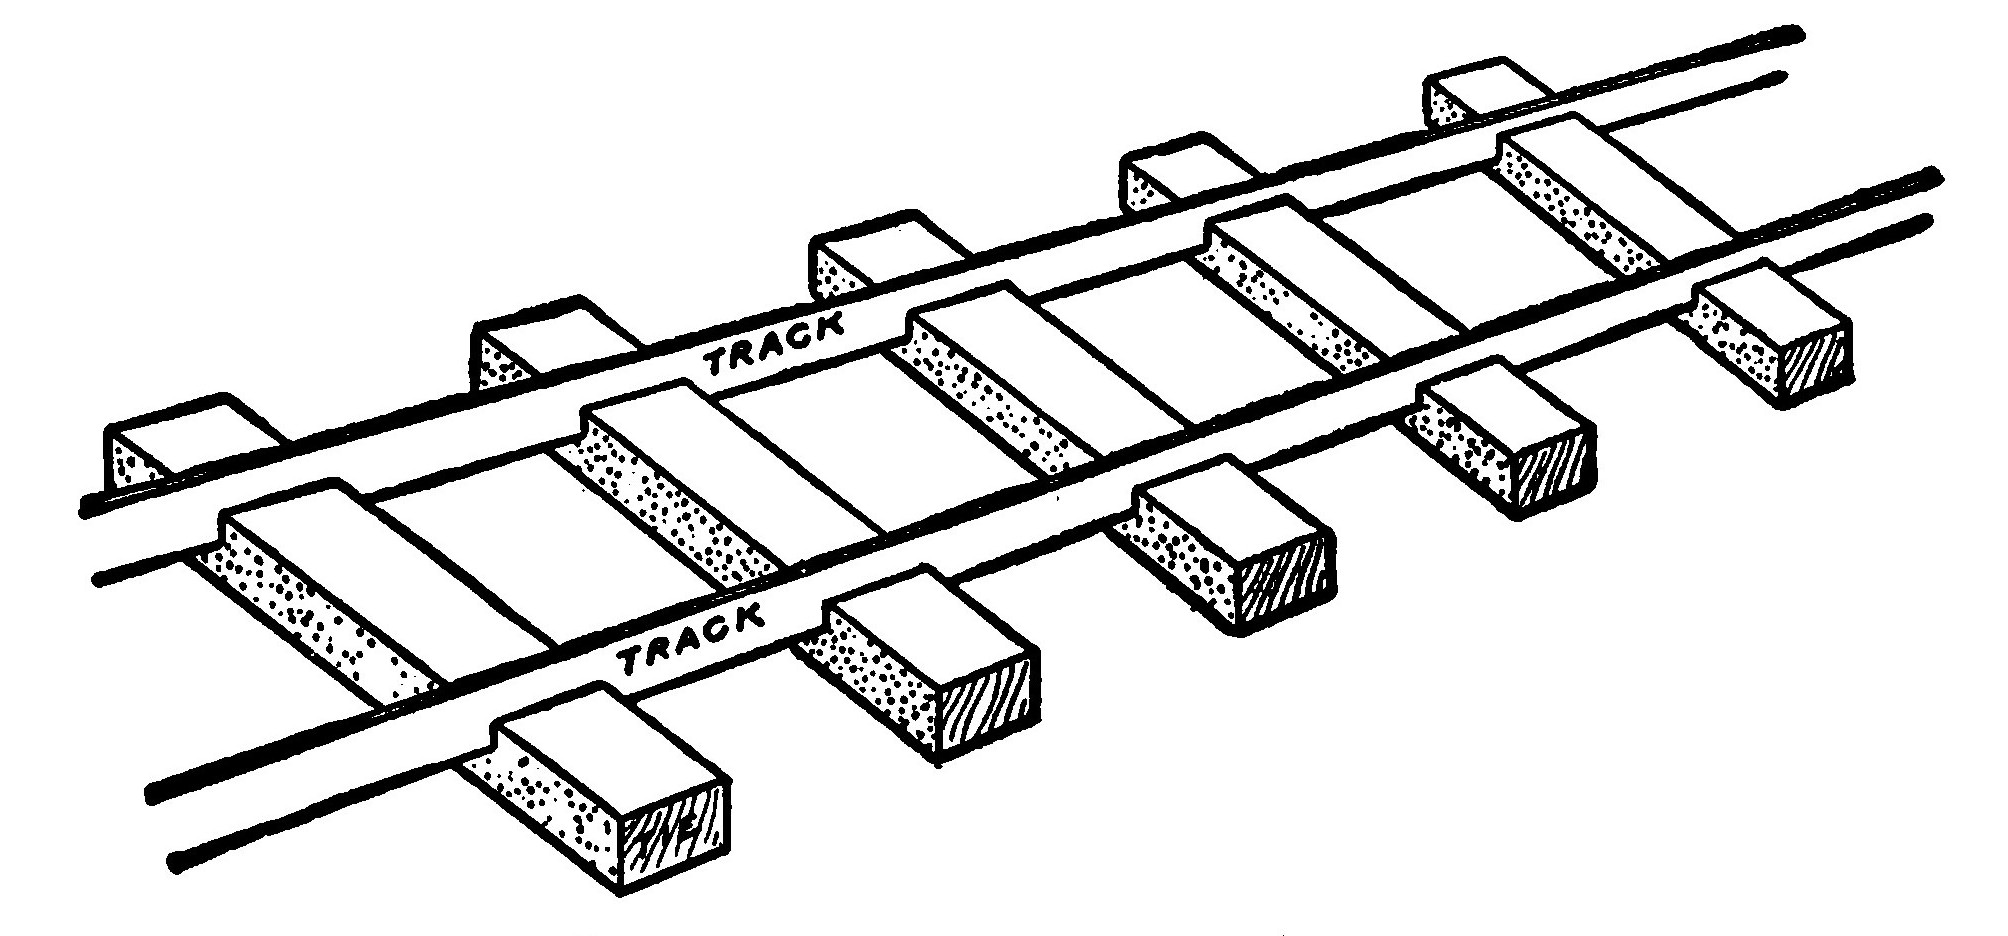 Fig. 273.–Arrangement of Track.